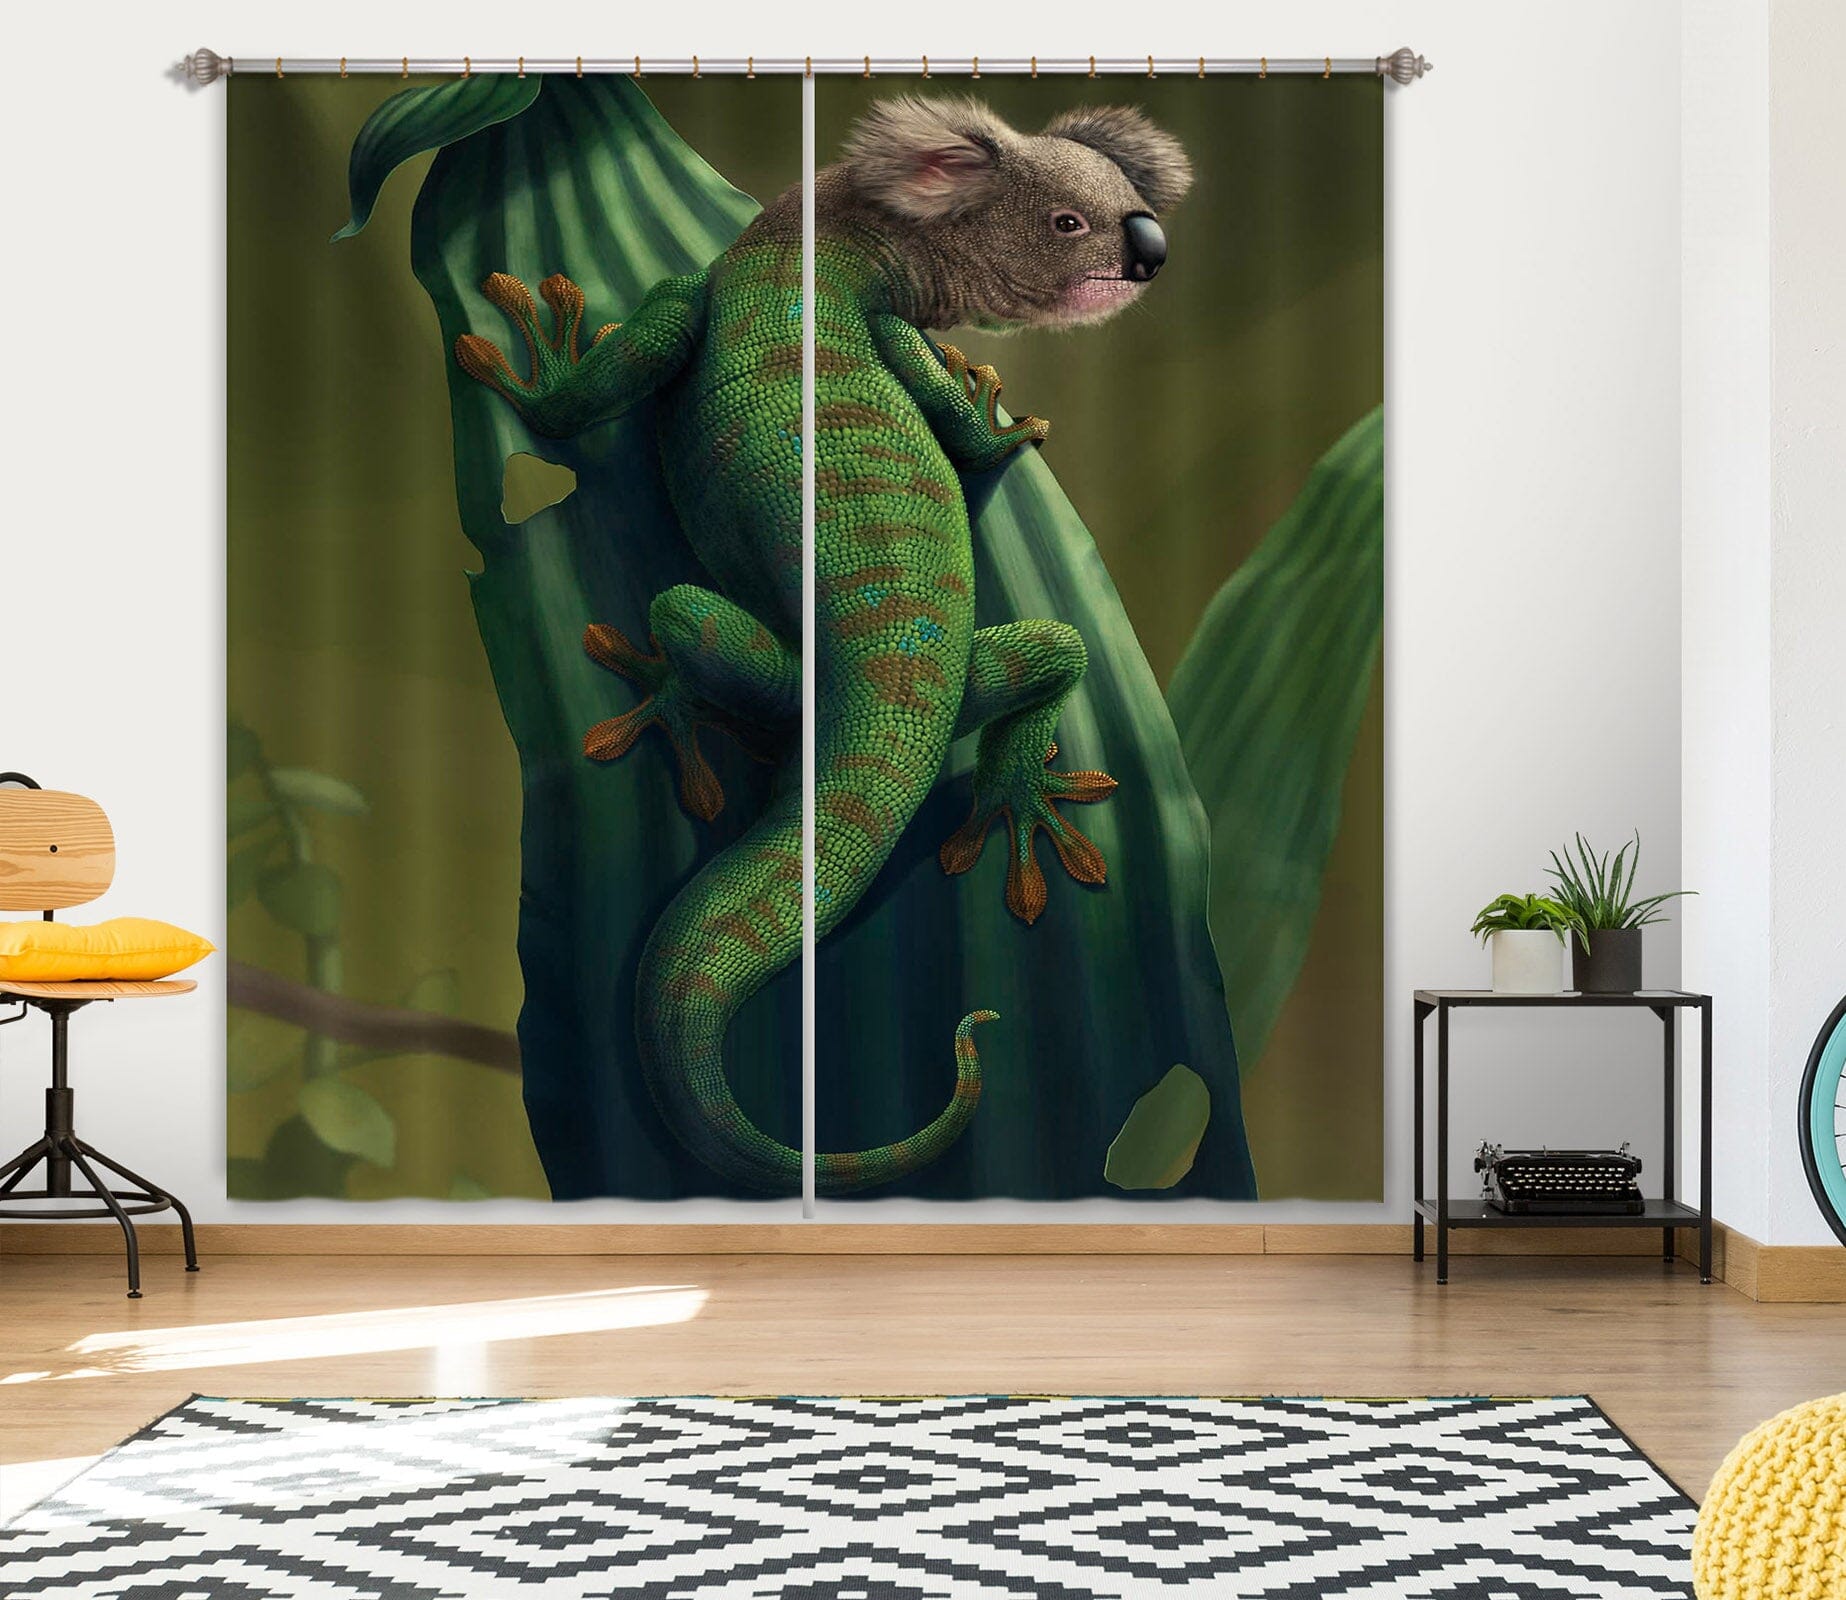 3D Gekoala 038 Vincent Hie Curtain Curtains Drapes Curtains AJ Creativity Home 